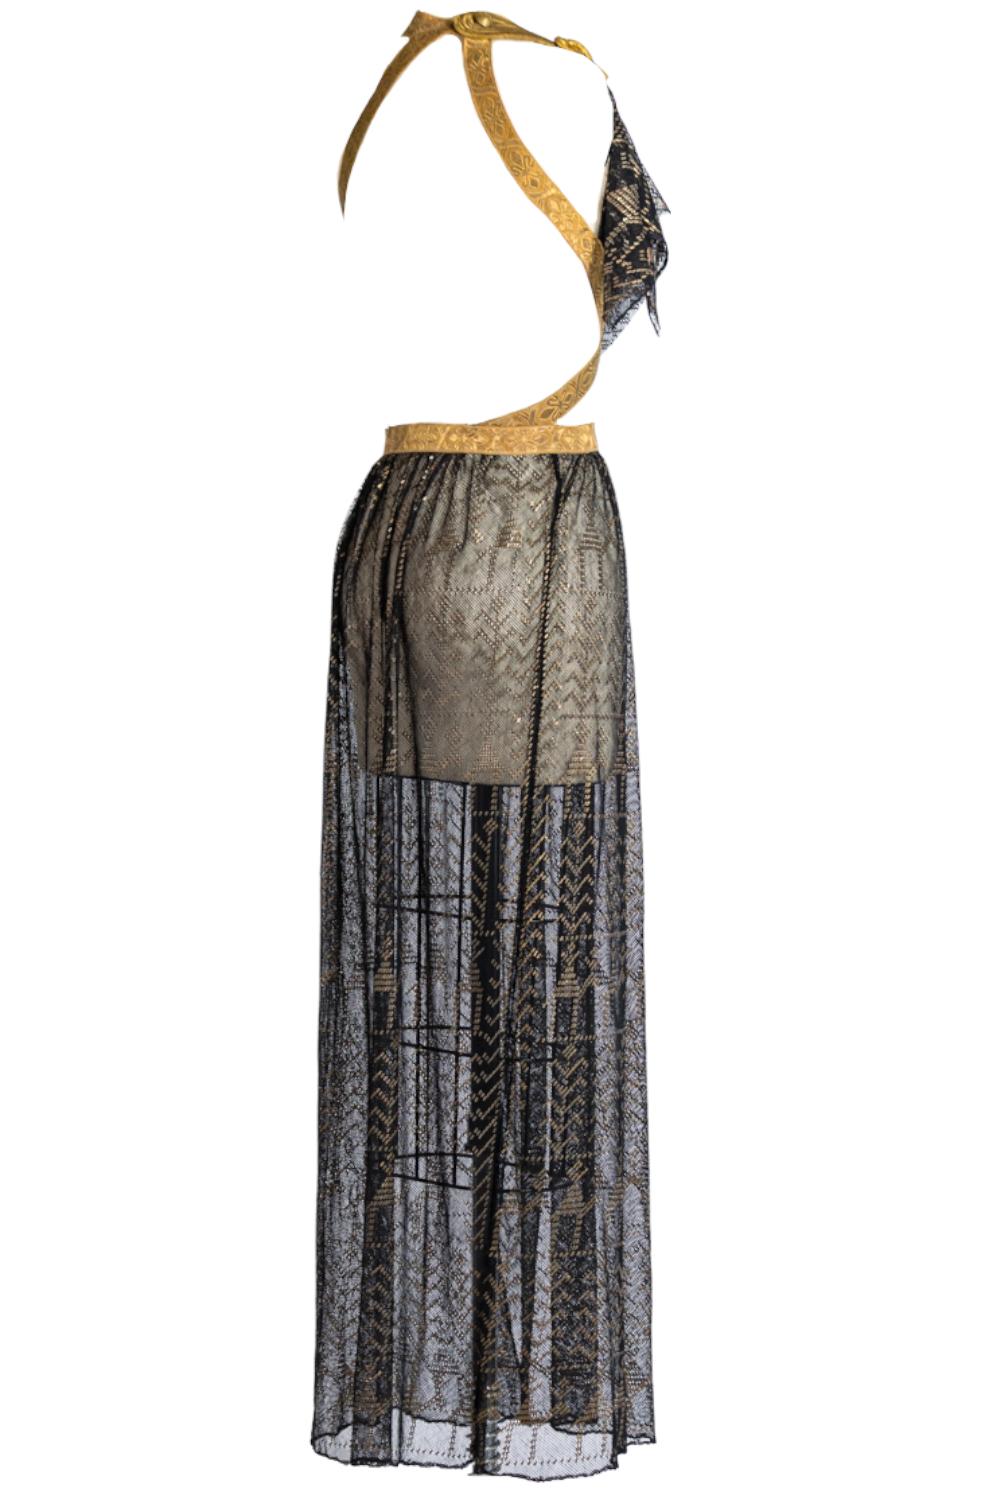 MORPHEW ATELIER Black & Gold Cotton Net Antique Egyptian Assuit Gown With Milit For Sale 3